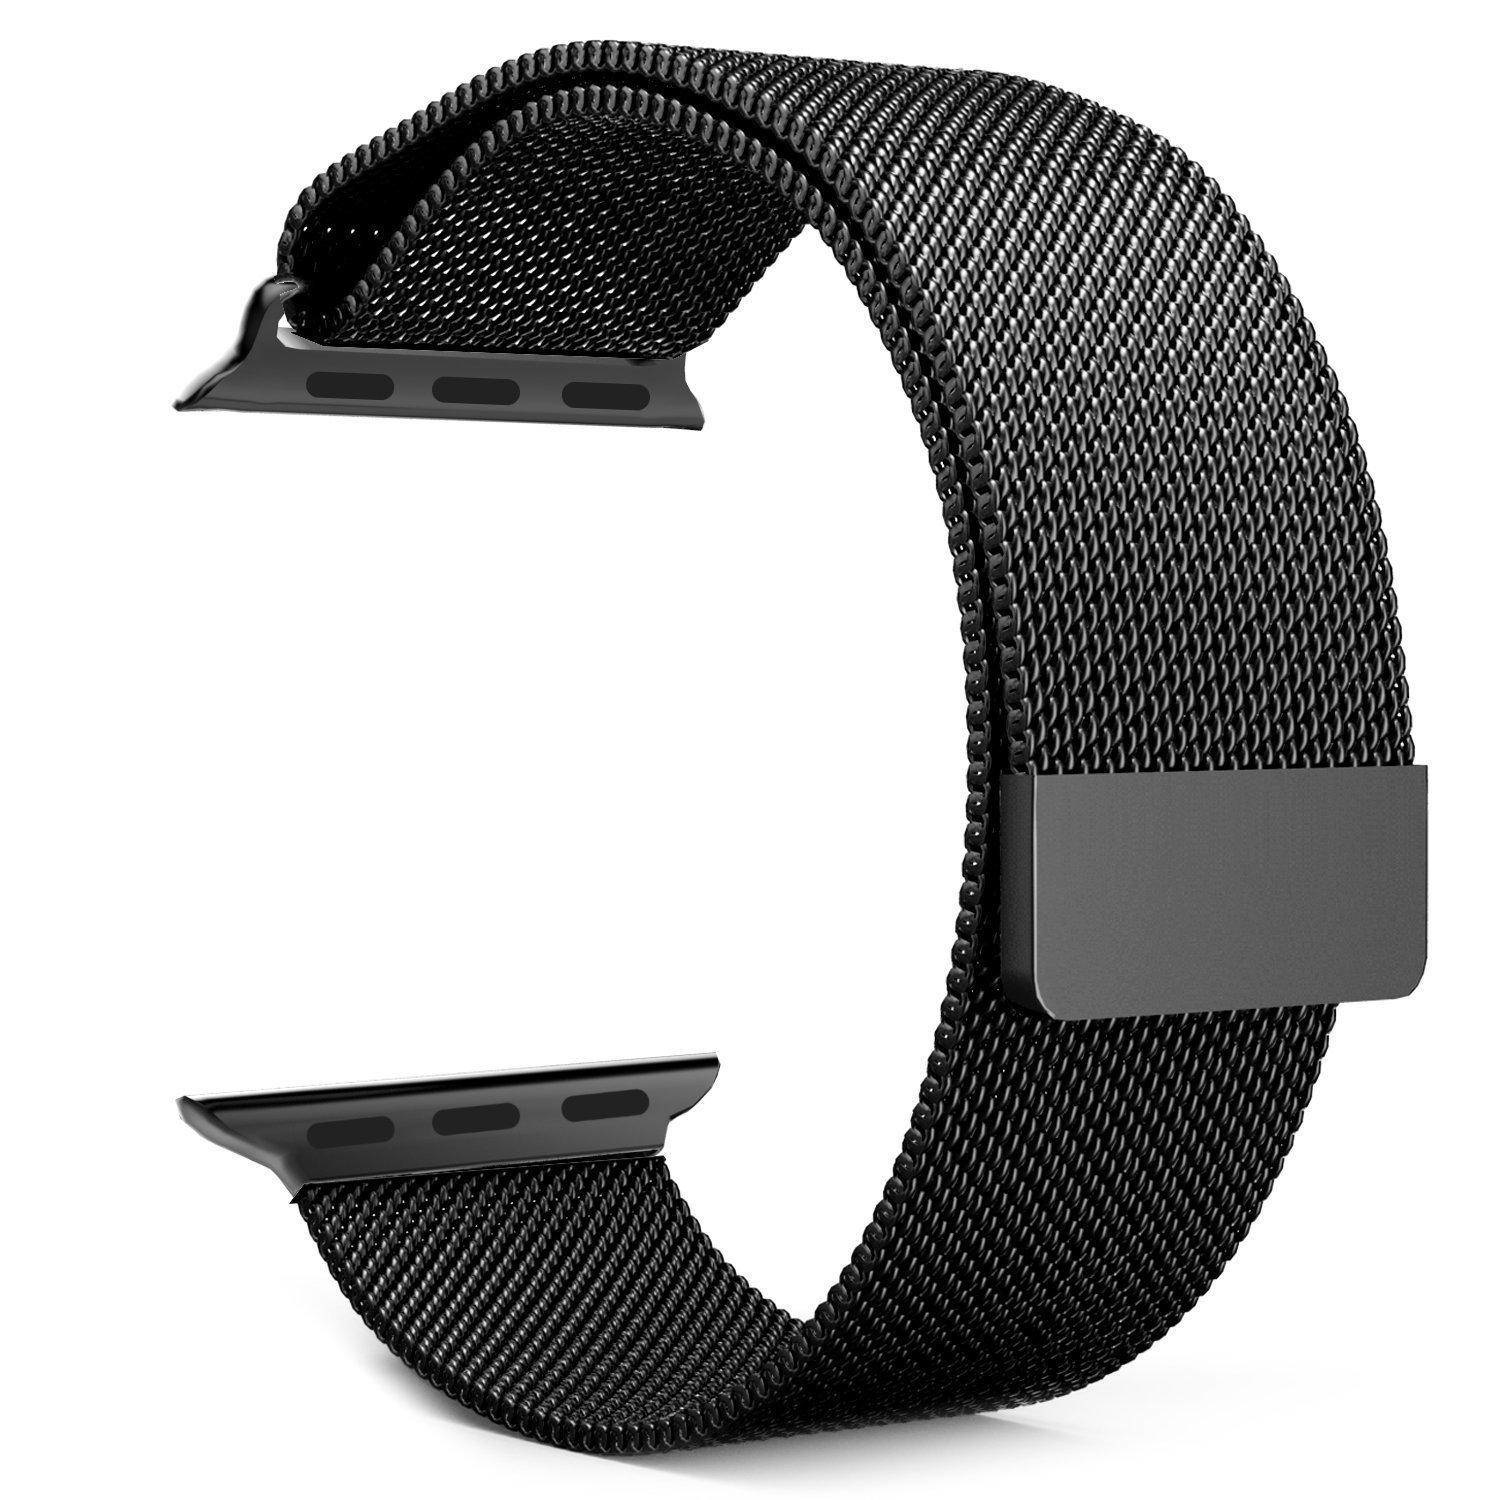 NoXx Geschikt Voor Apple Watch 7 Bandje Magneetsluiting - Horloge Band Voor Apple Watch 7 45 mm Milanees - Zwart En Zilver